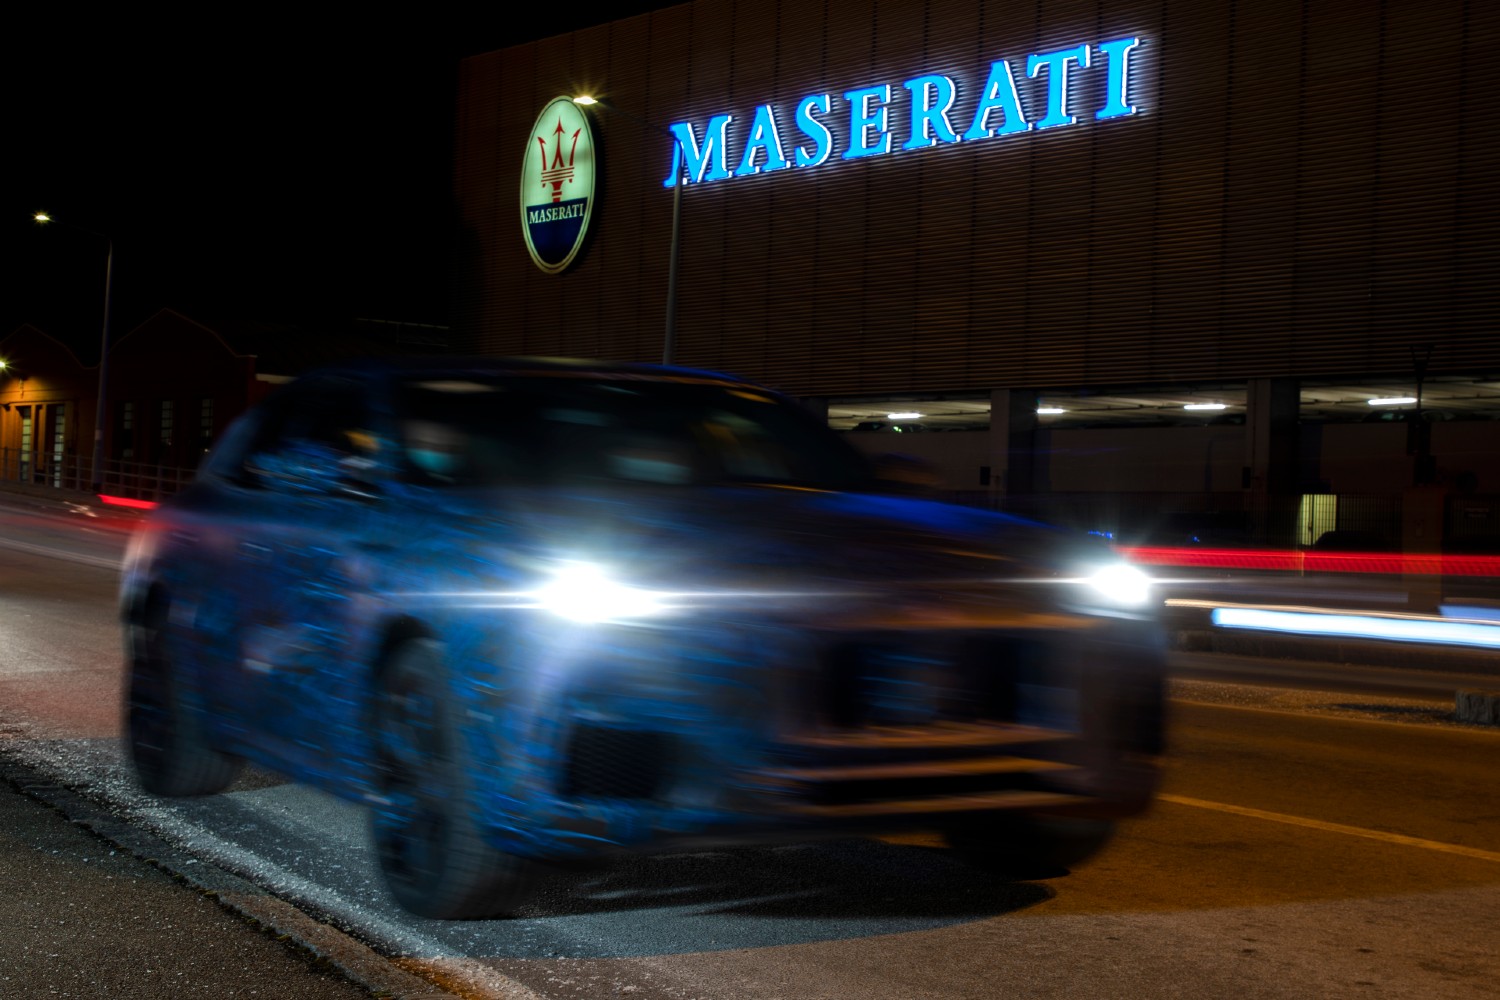 Concretizado o anunciado plano de relançamento, a Maserati prepara agora a oferta de uma gama 100% elétrica, já para 2025 